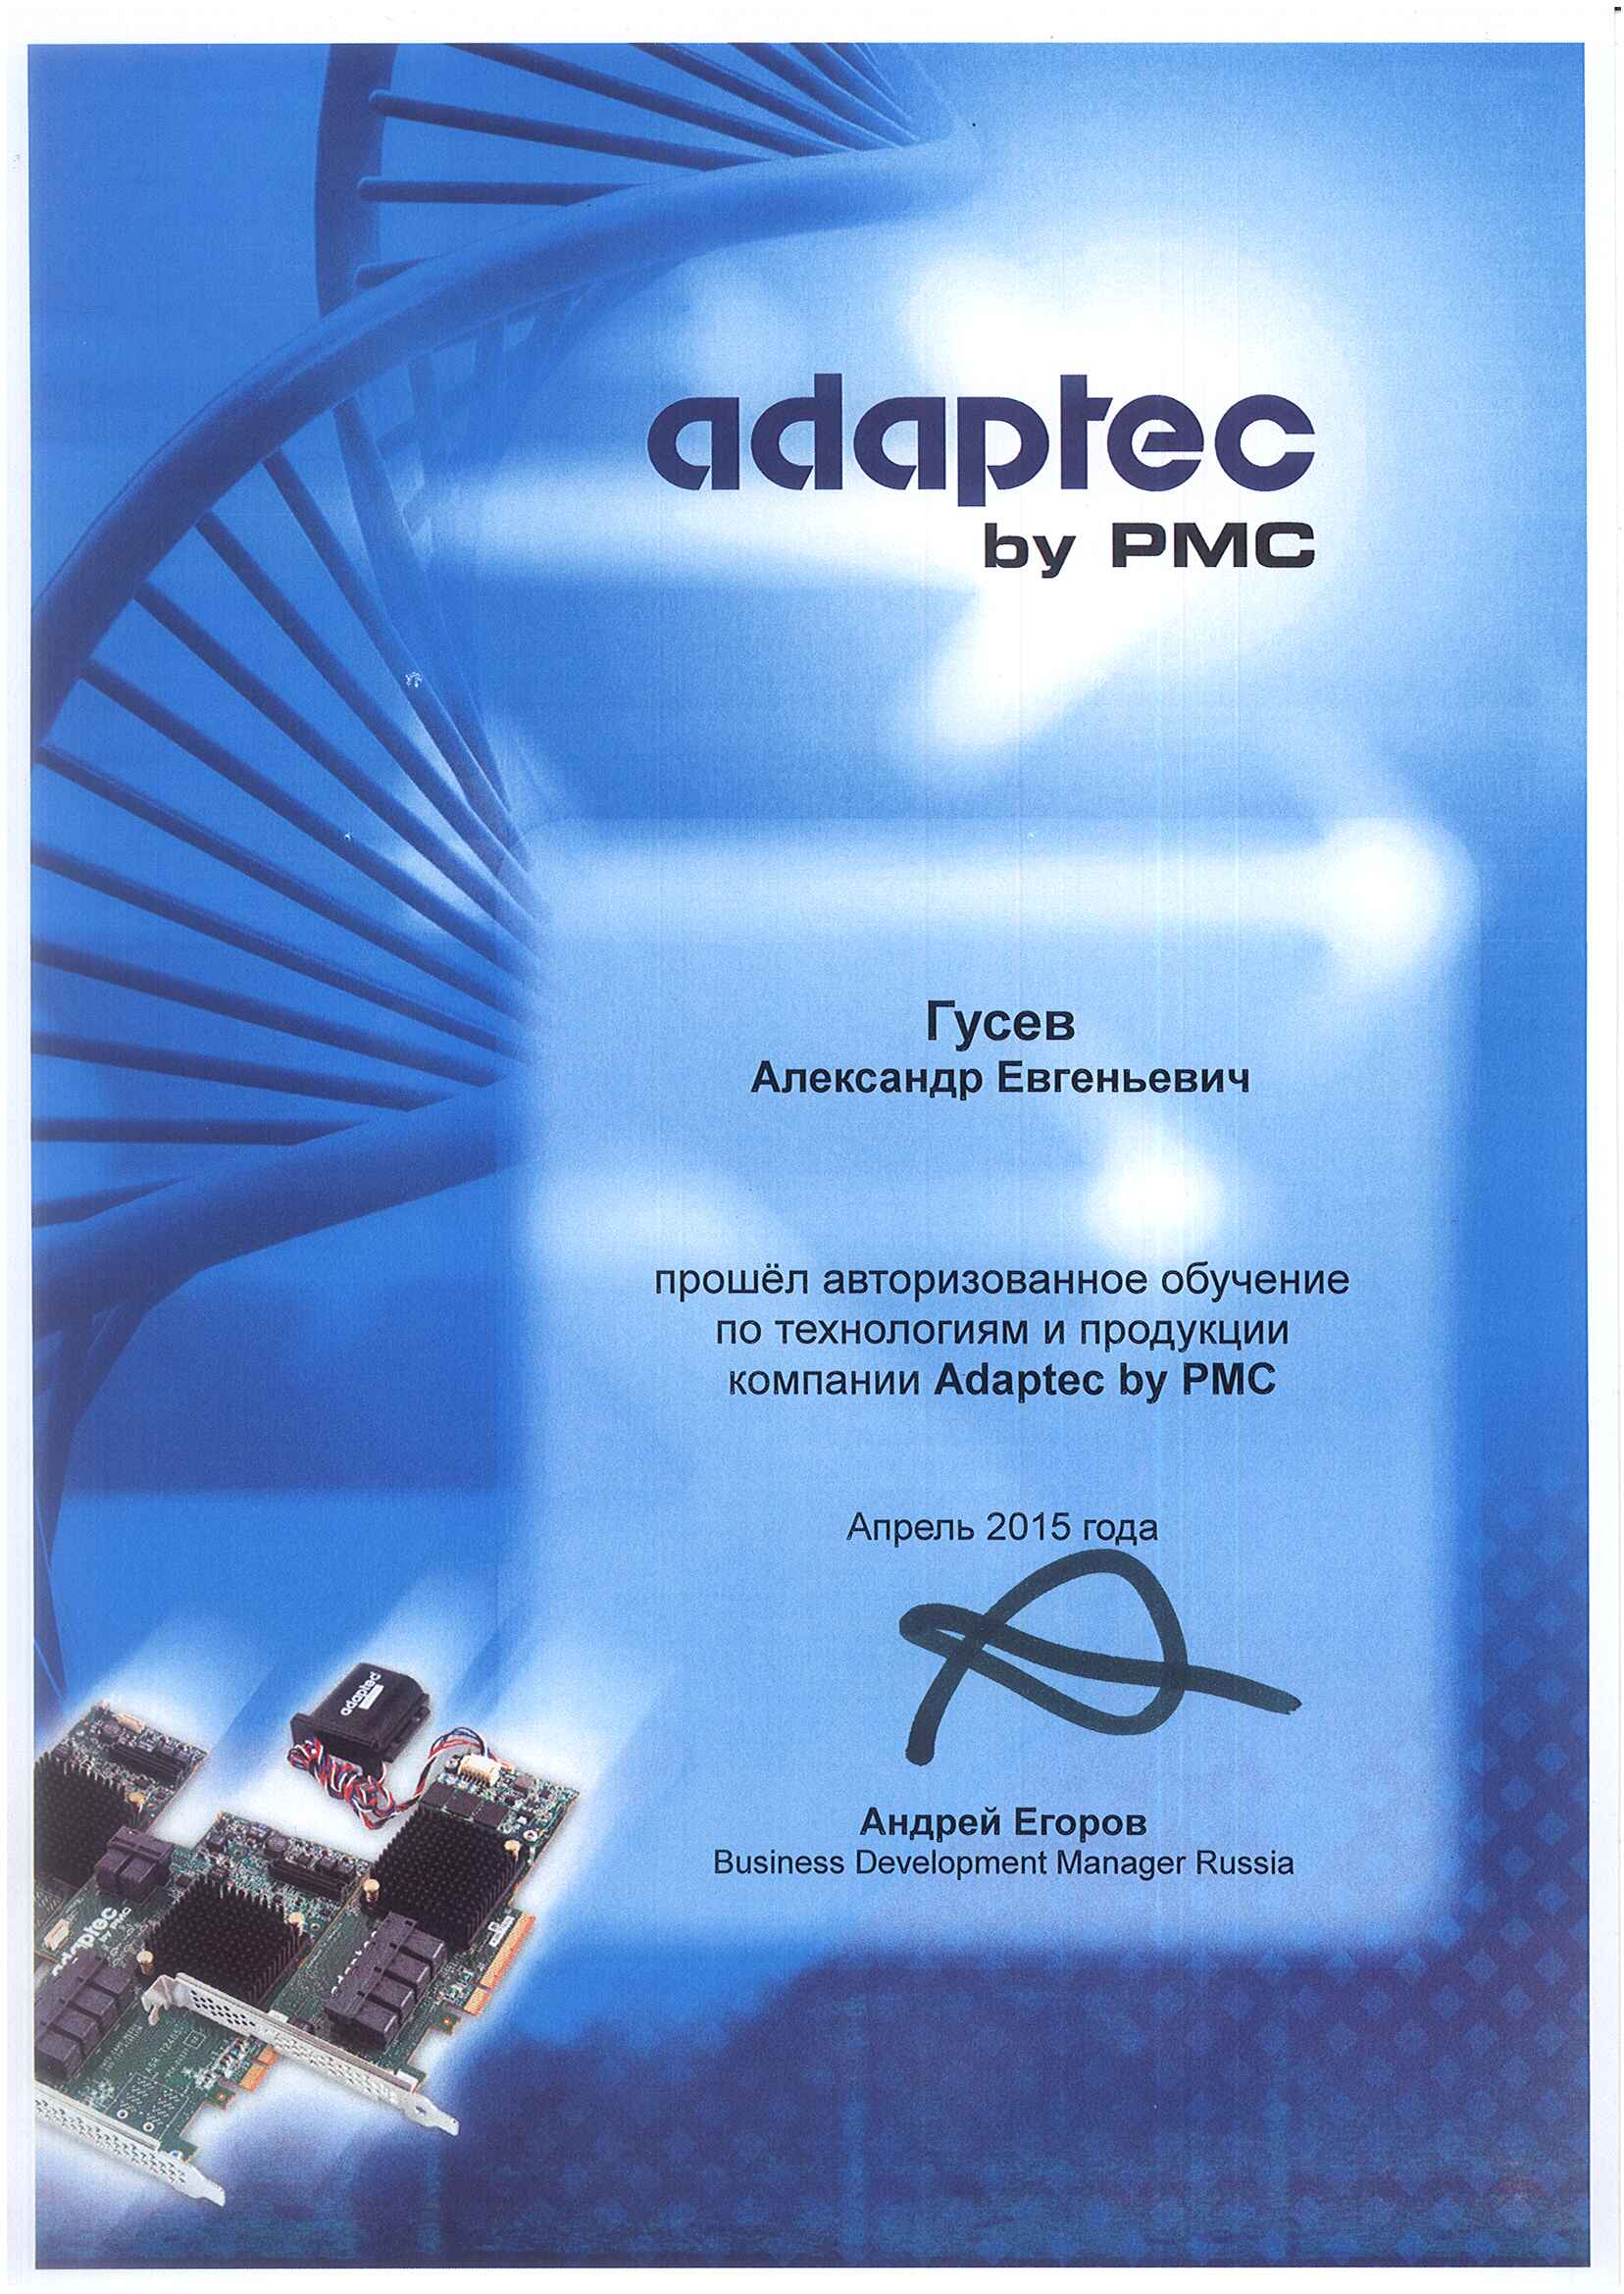 Сертификат Adaptec-Гусев Александр Евгеньевич